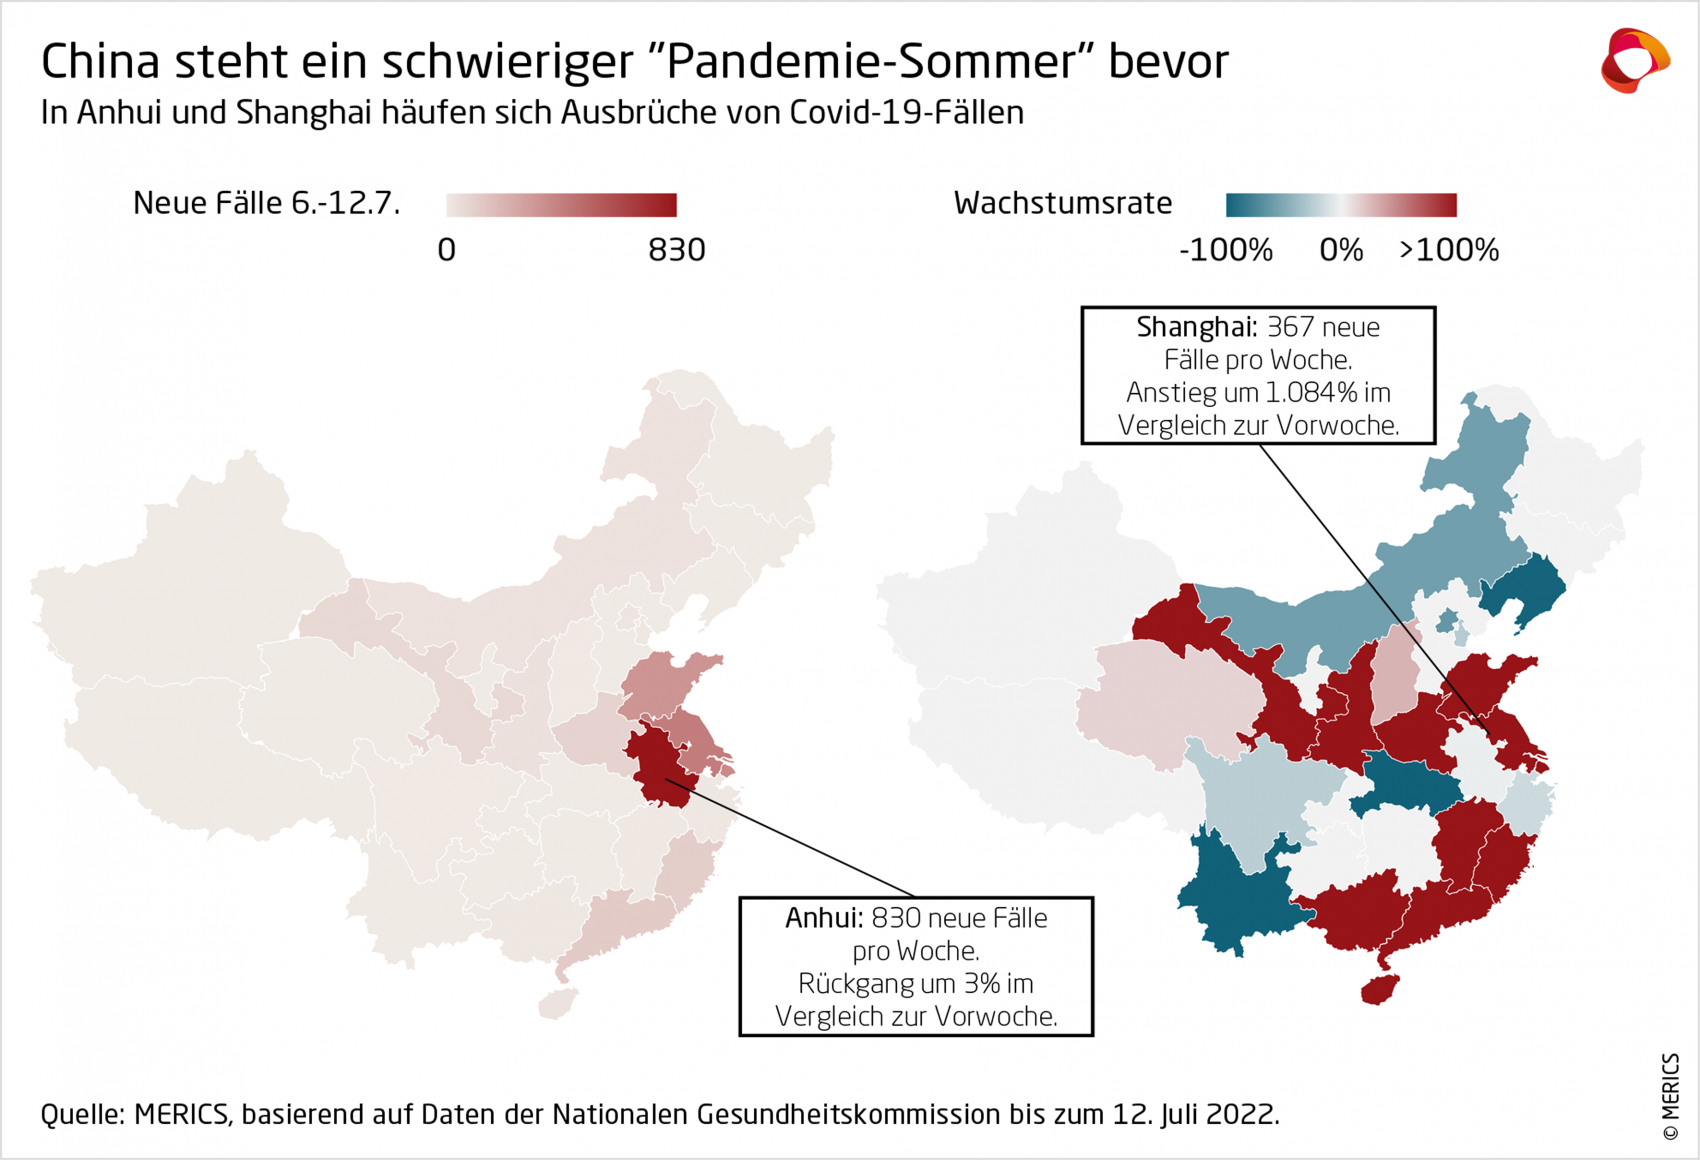 China steht ein schwieriger "Pandemie-Sommer" bevor